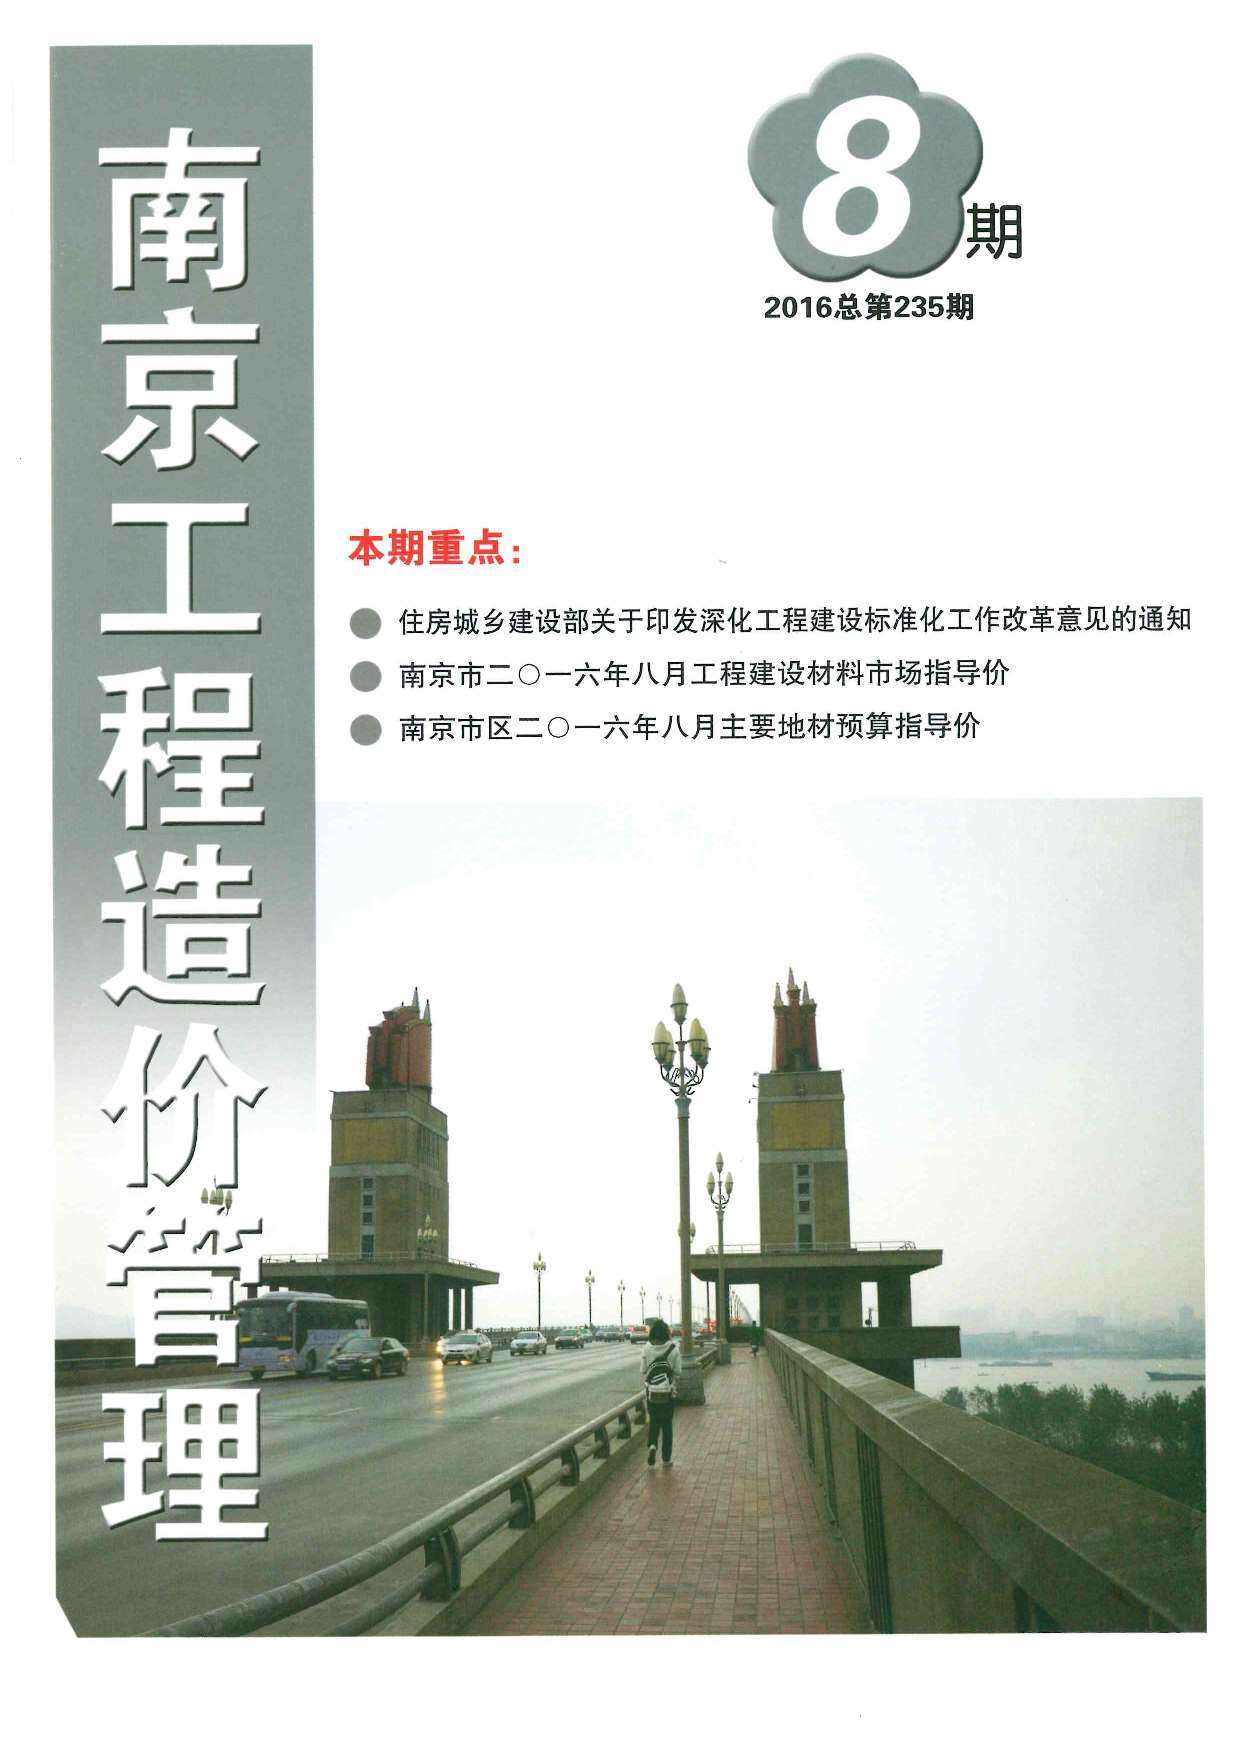 南京市2016年8月工程造价信息期刊